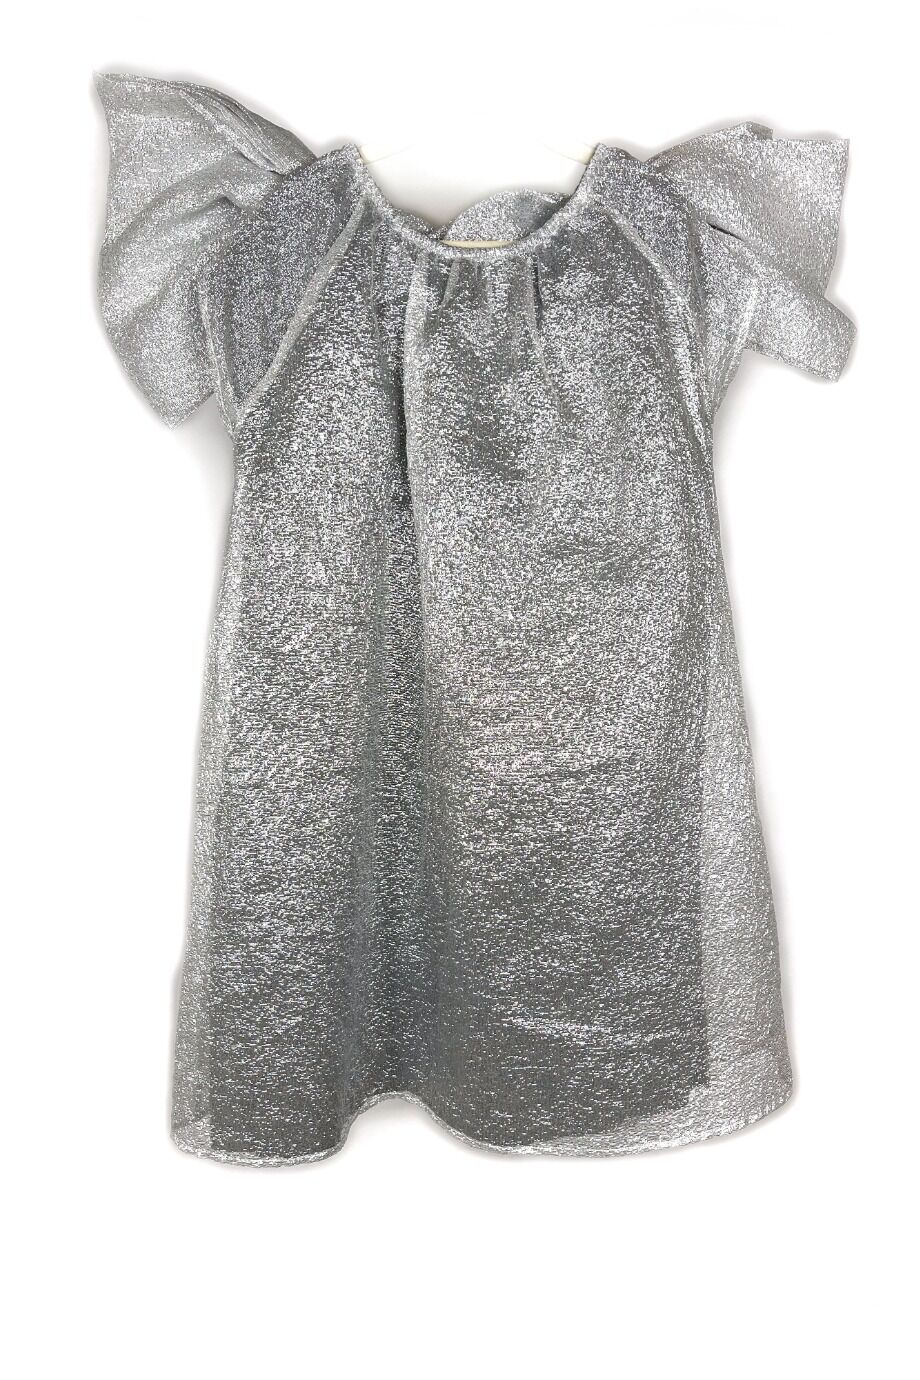 image 2 Детское платье серебристого цвета с бантами на плечах